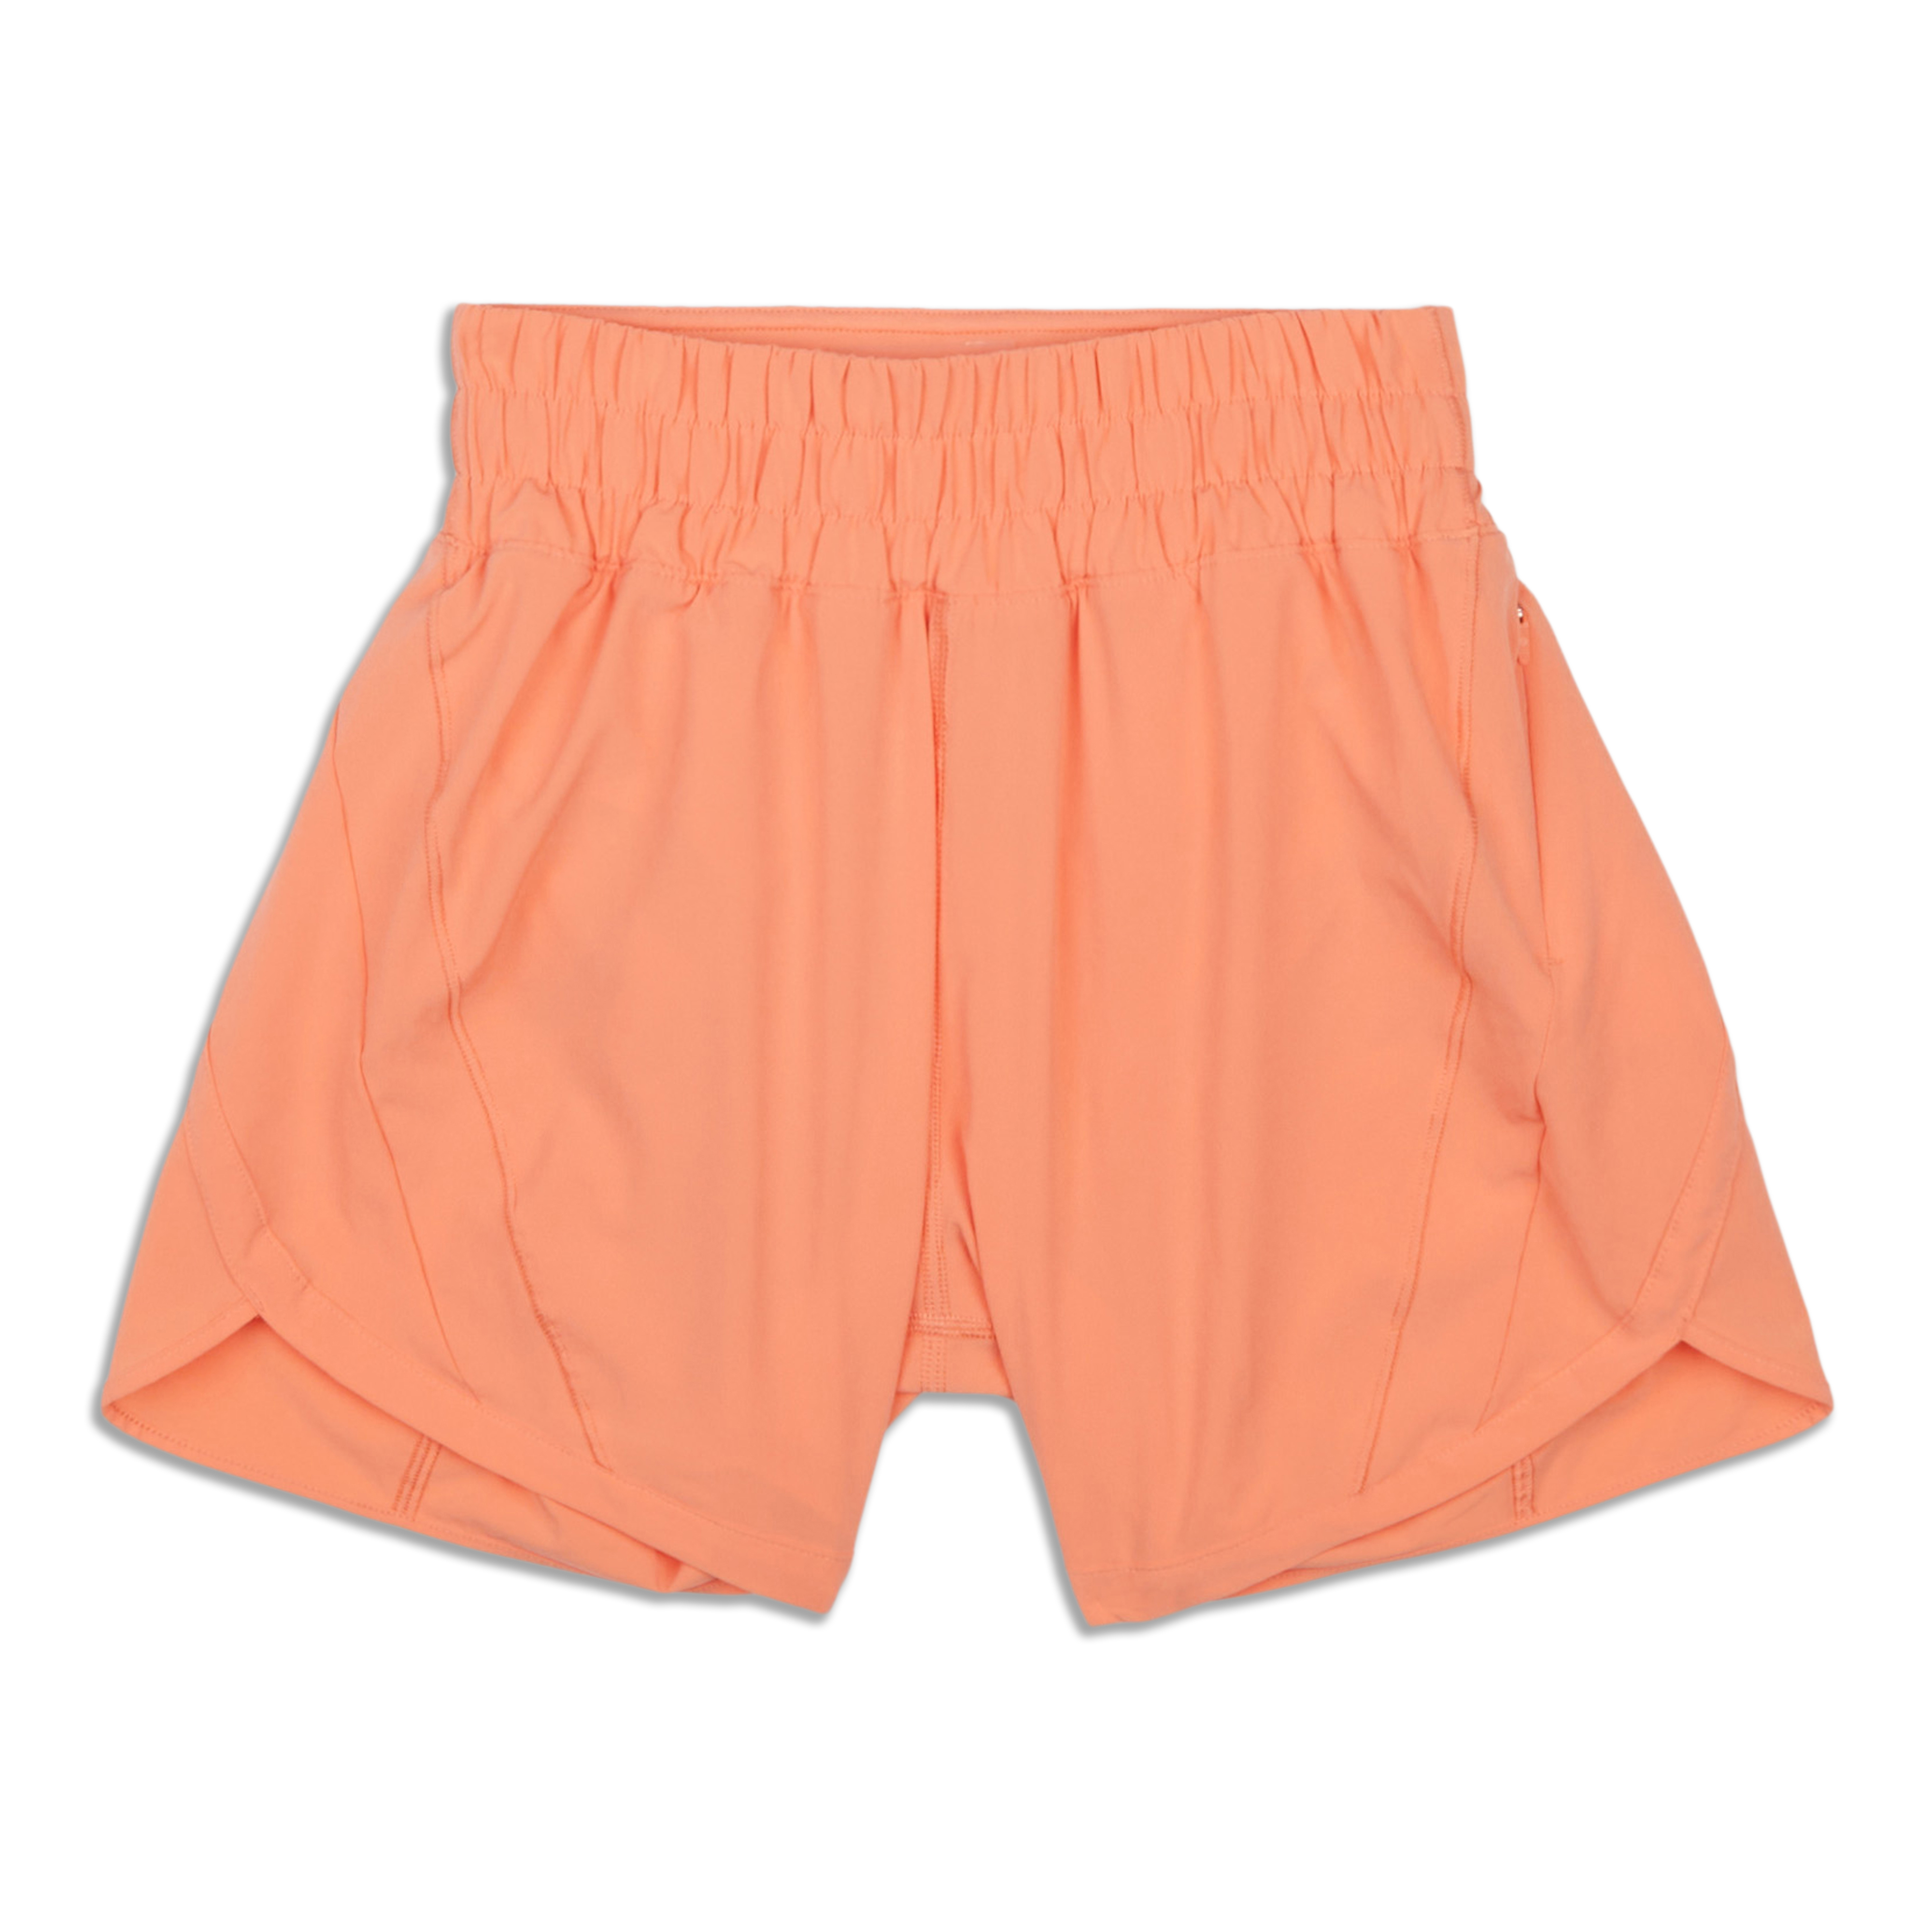 Lululemon Athletic Running Pull On Shorts Womens Size 10 Pink Orange